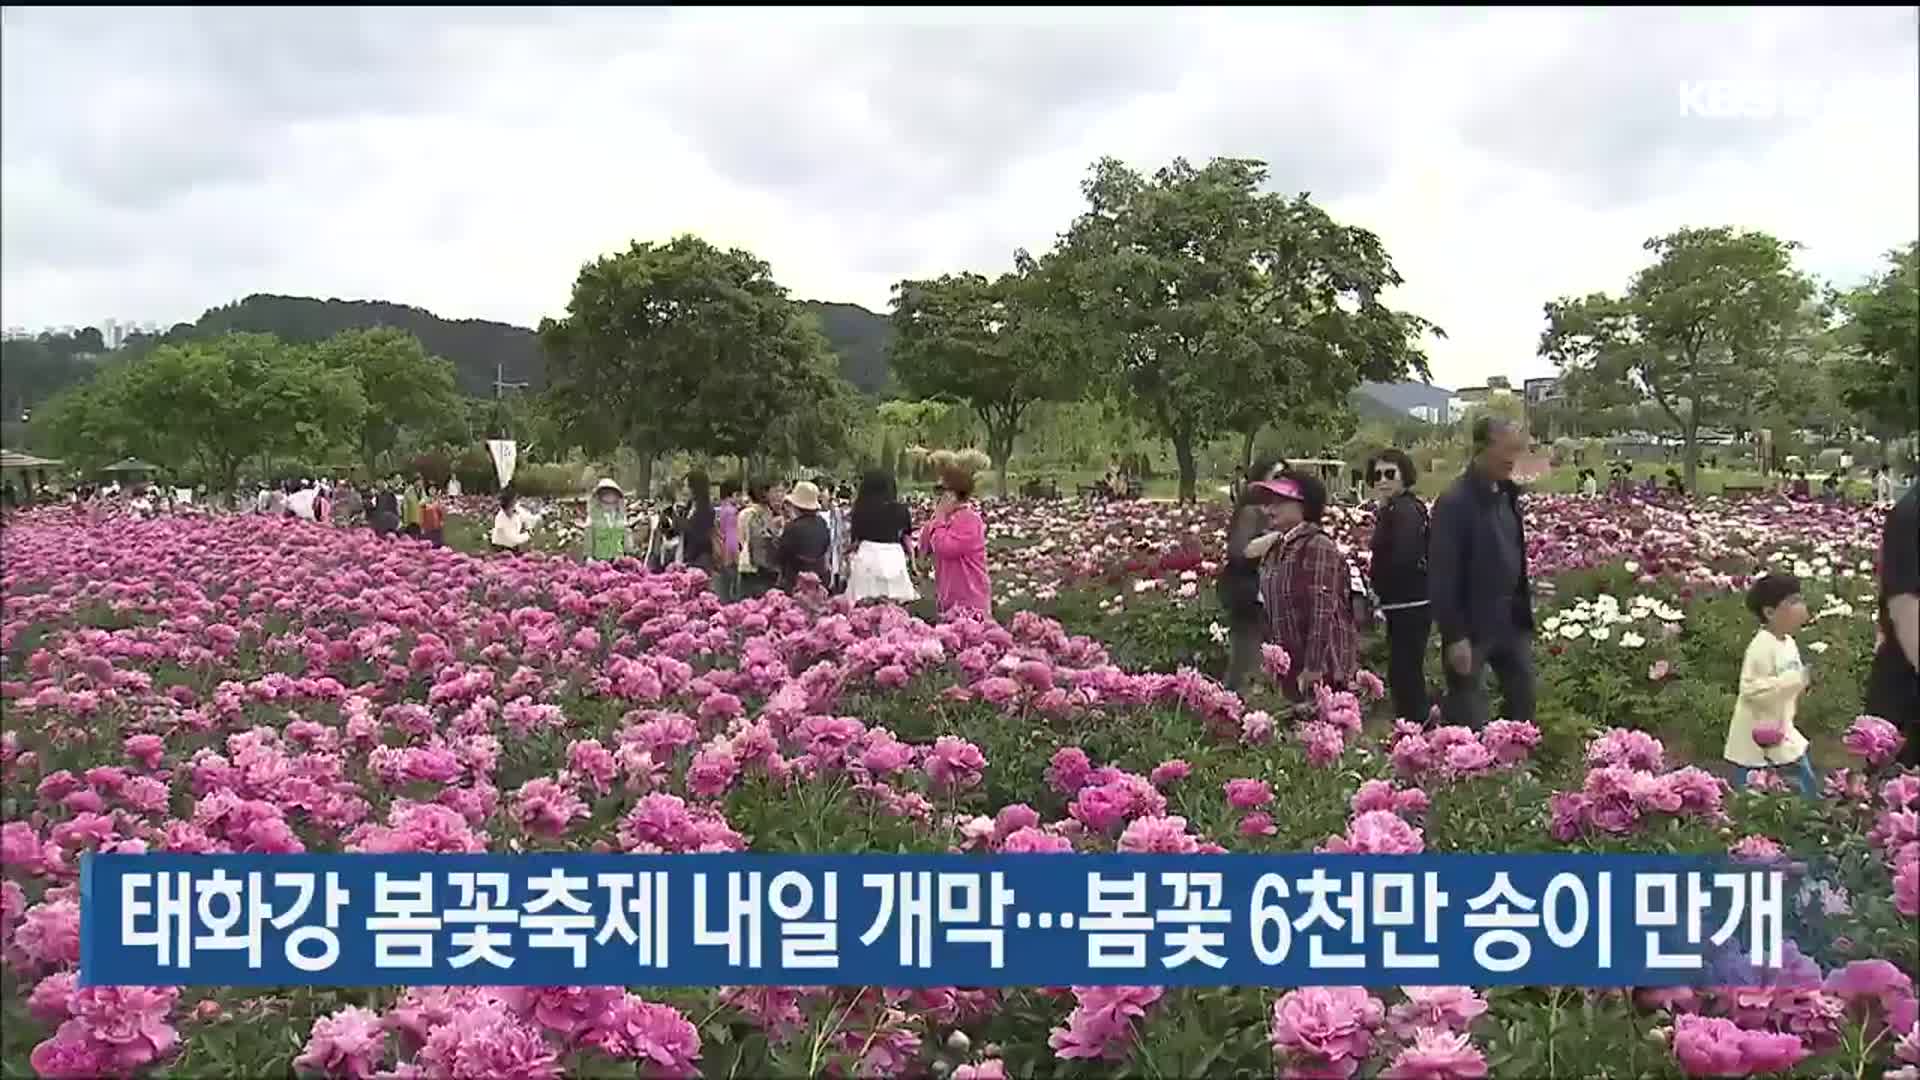 태화강 봄꽃축제 내일 개막…봄꽃 6천만 송이 만개